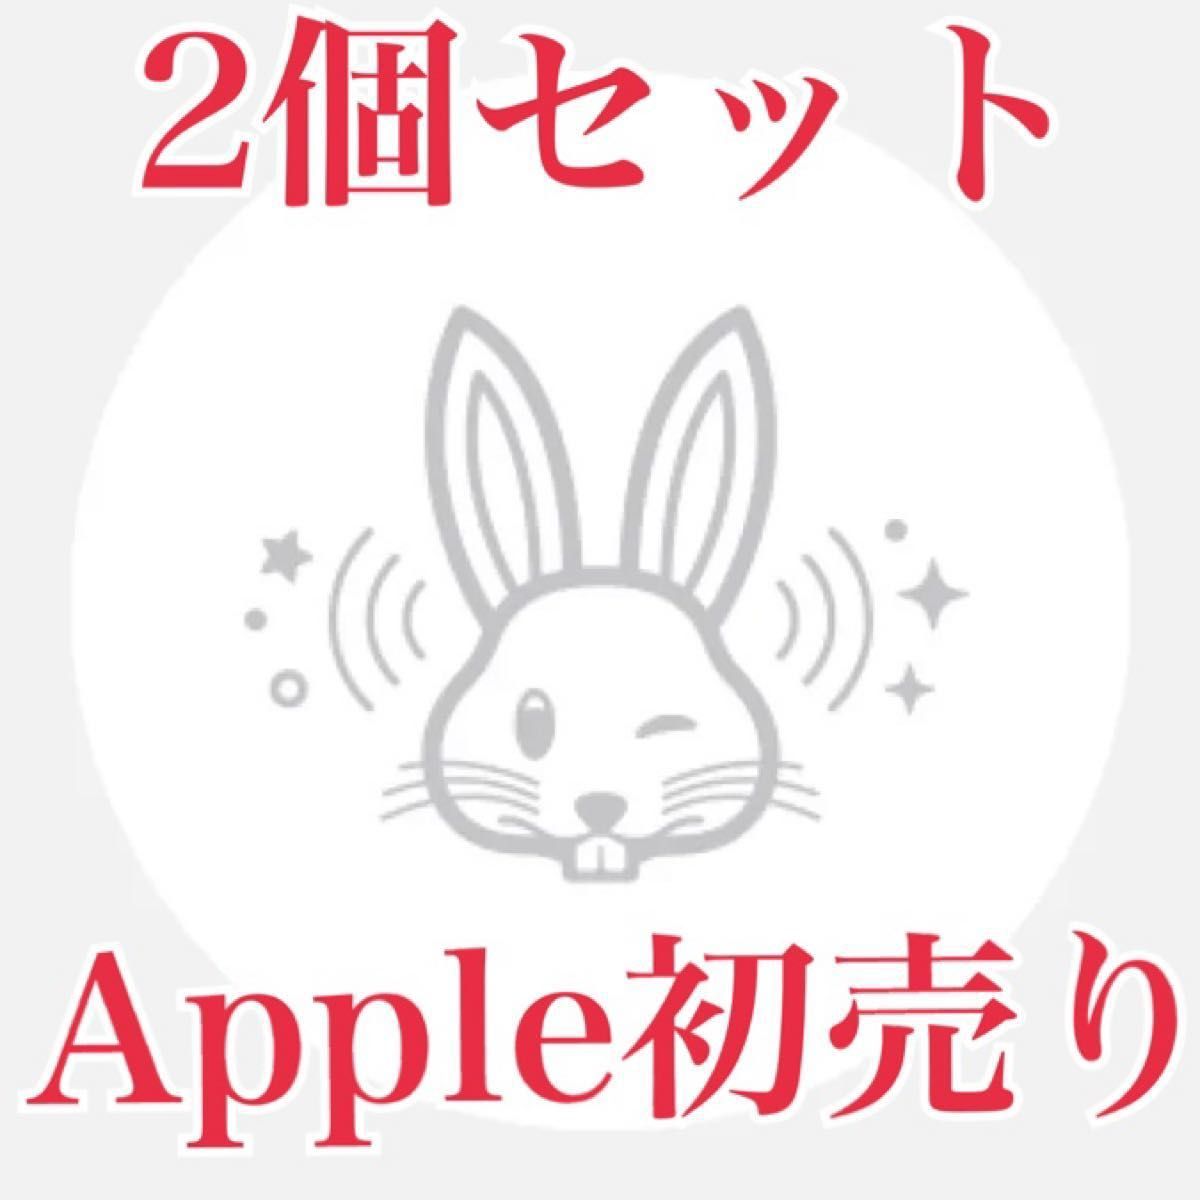 【2個セット】Apple初売り 限定AirTag アップル エアタグ うさぎ ウサギ 兎 干支 本体